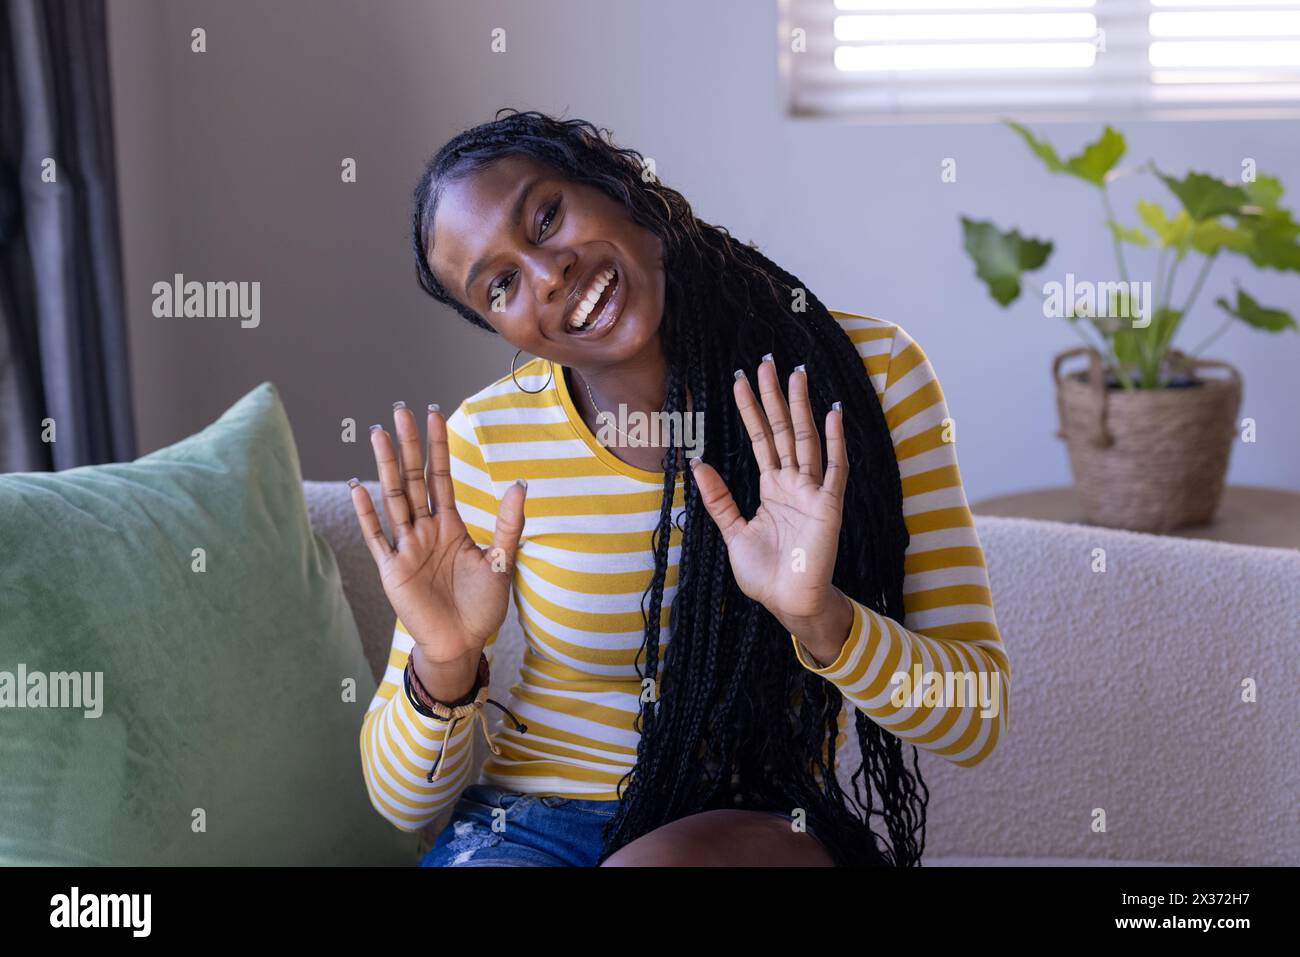 Une jeune femme afro-américaine assise à la maison, agitant les mains avec un sourire éclatant pendant un appel vidéo. Portant une chemise rayée jaune, longue tressée ha Banque D'Images